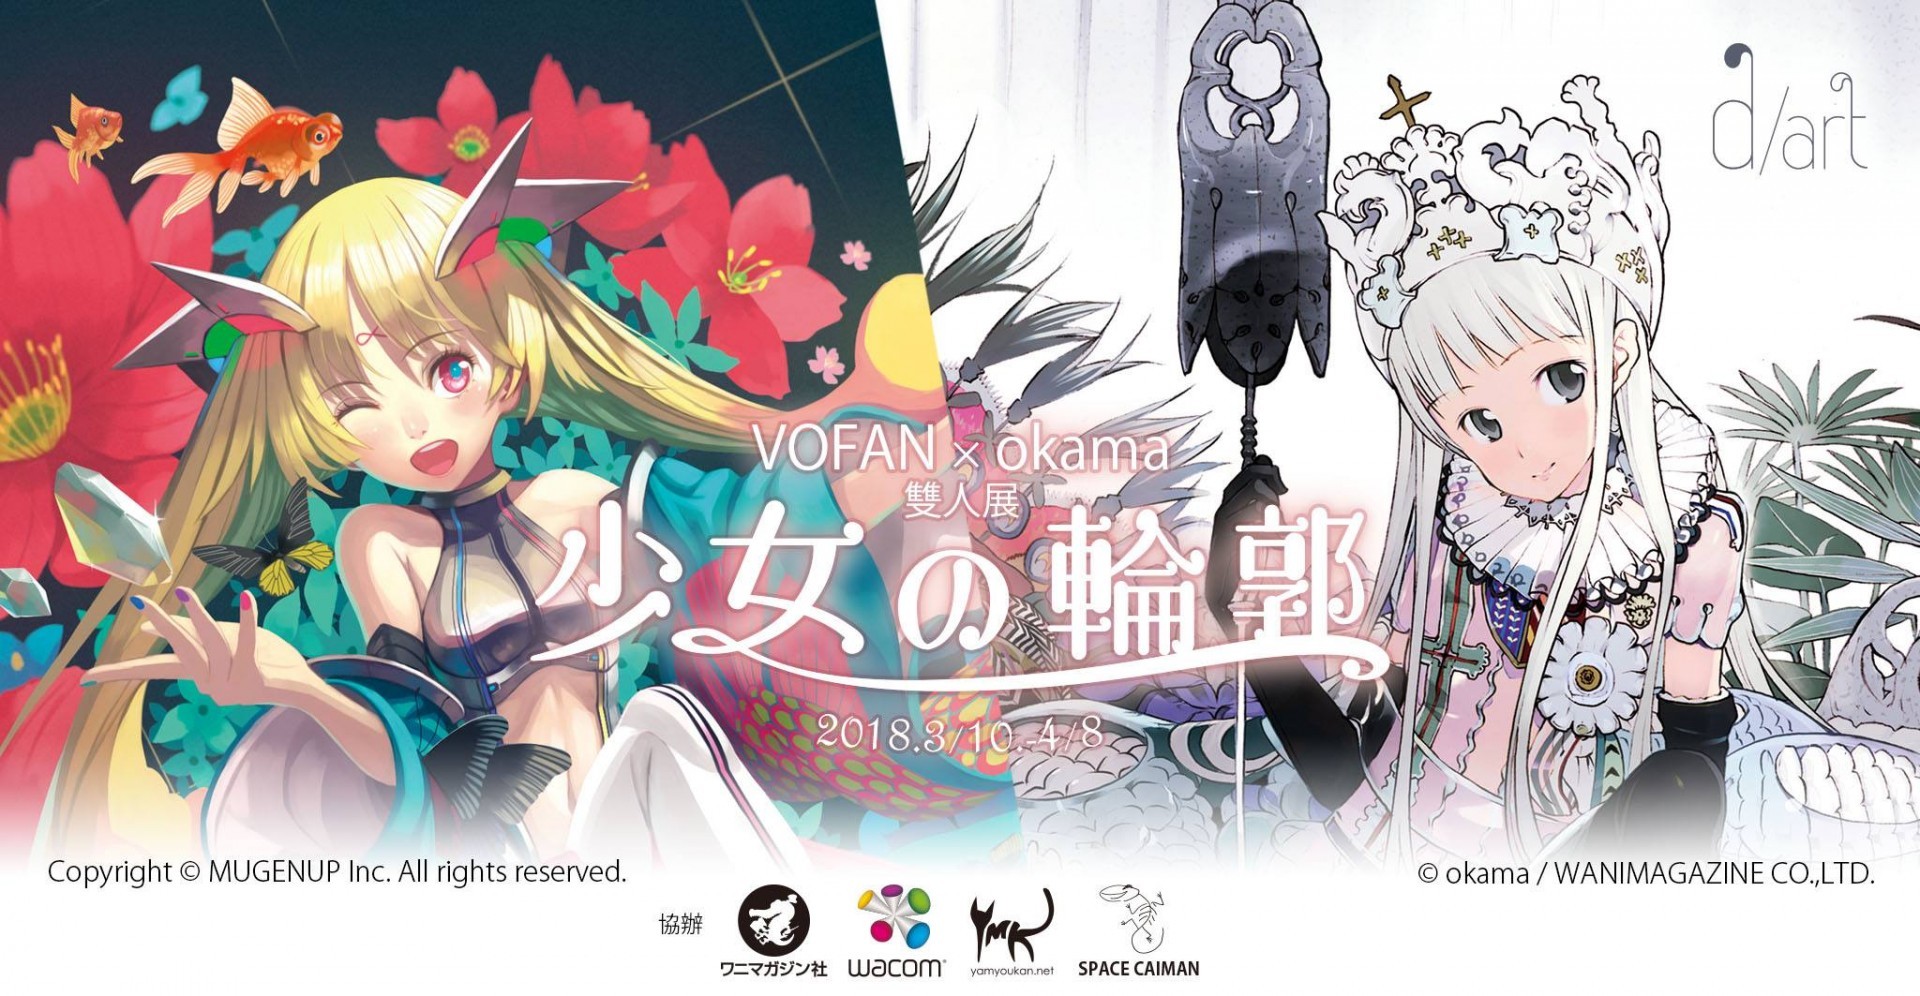 kama x VOFAN 雙人展「少女の輪郭」將自 3 月 10 日起於台北開展